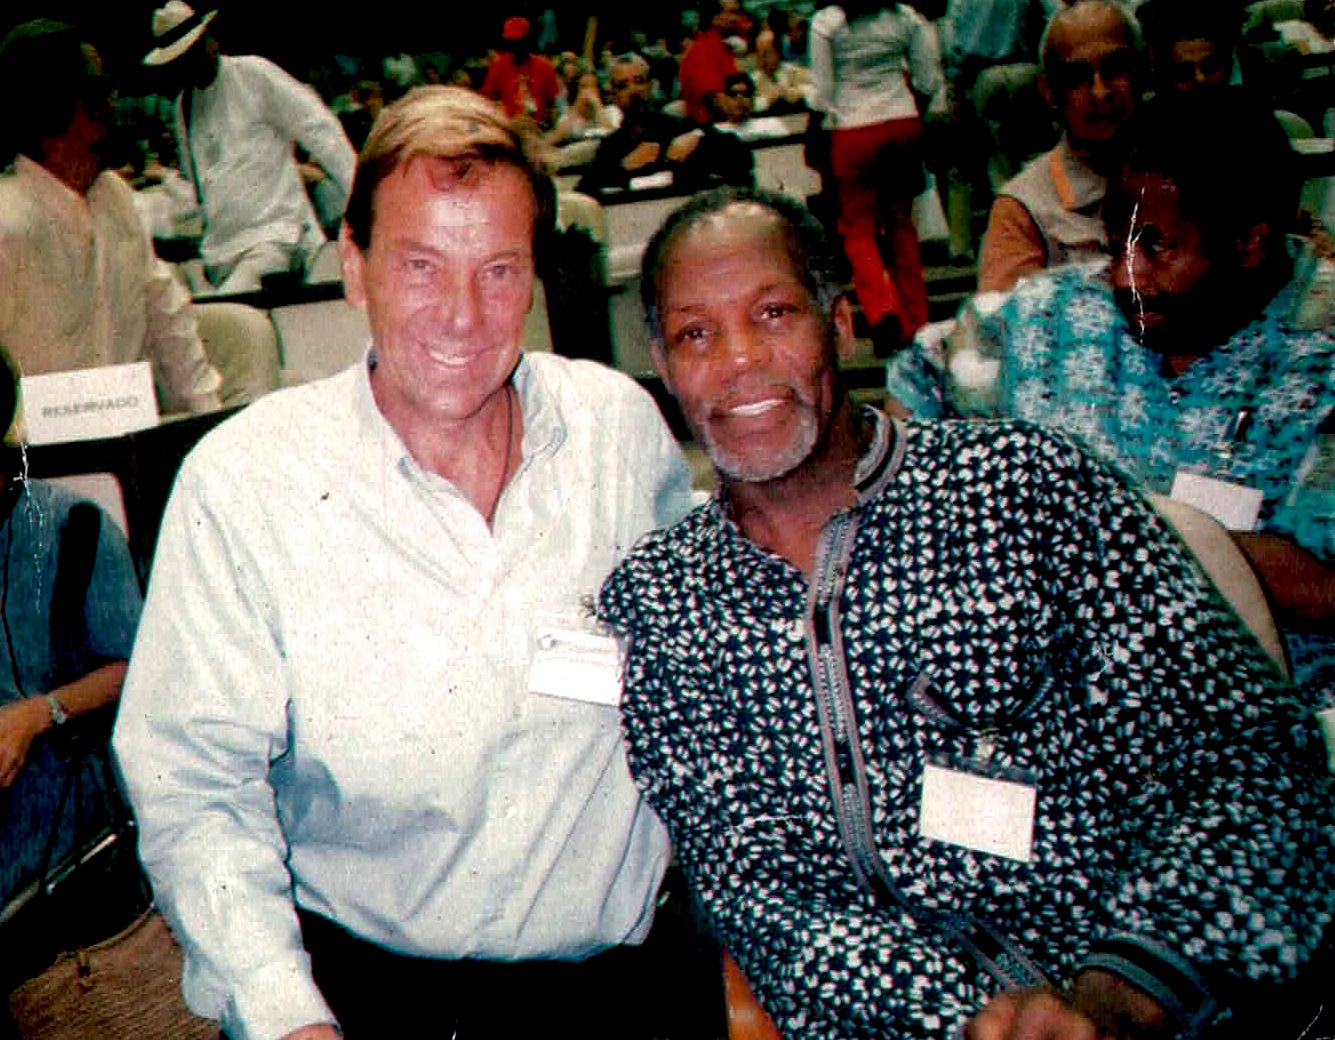 Bob Debrino & Danny Glover in Cuba